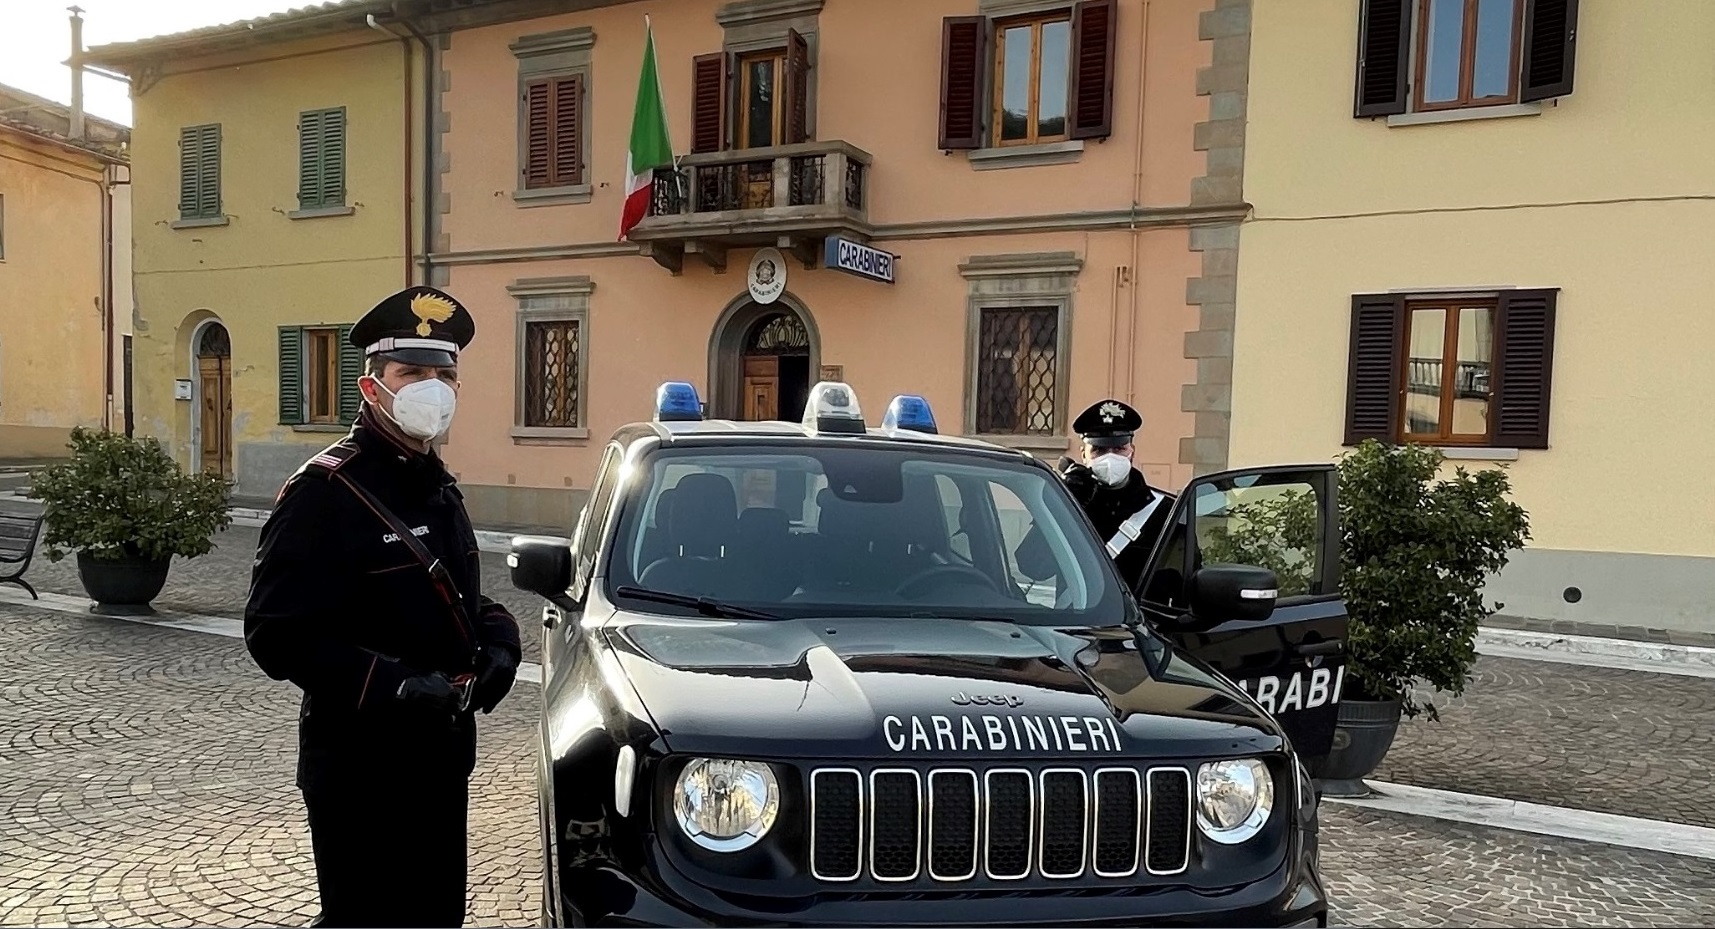 Cagnetta presa a bastonate a Cavriglia. Le indagini dei carabinieri consentono di denunciarne l’autore